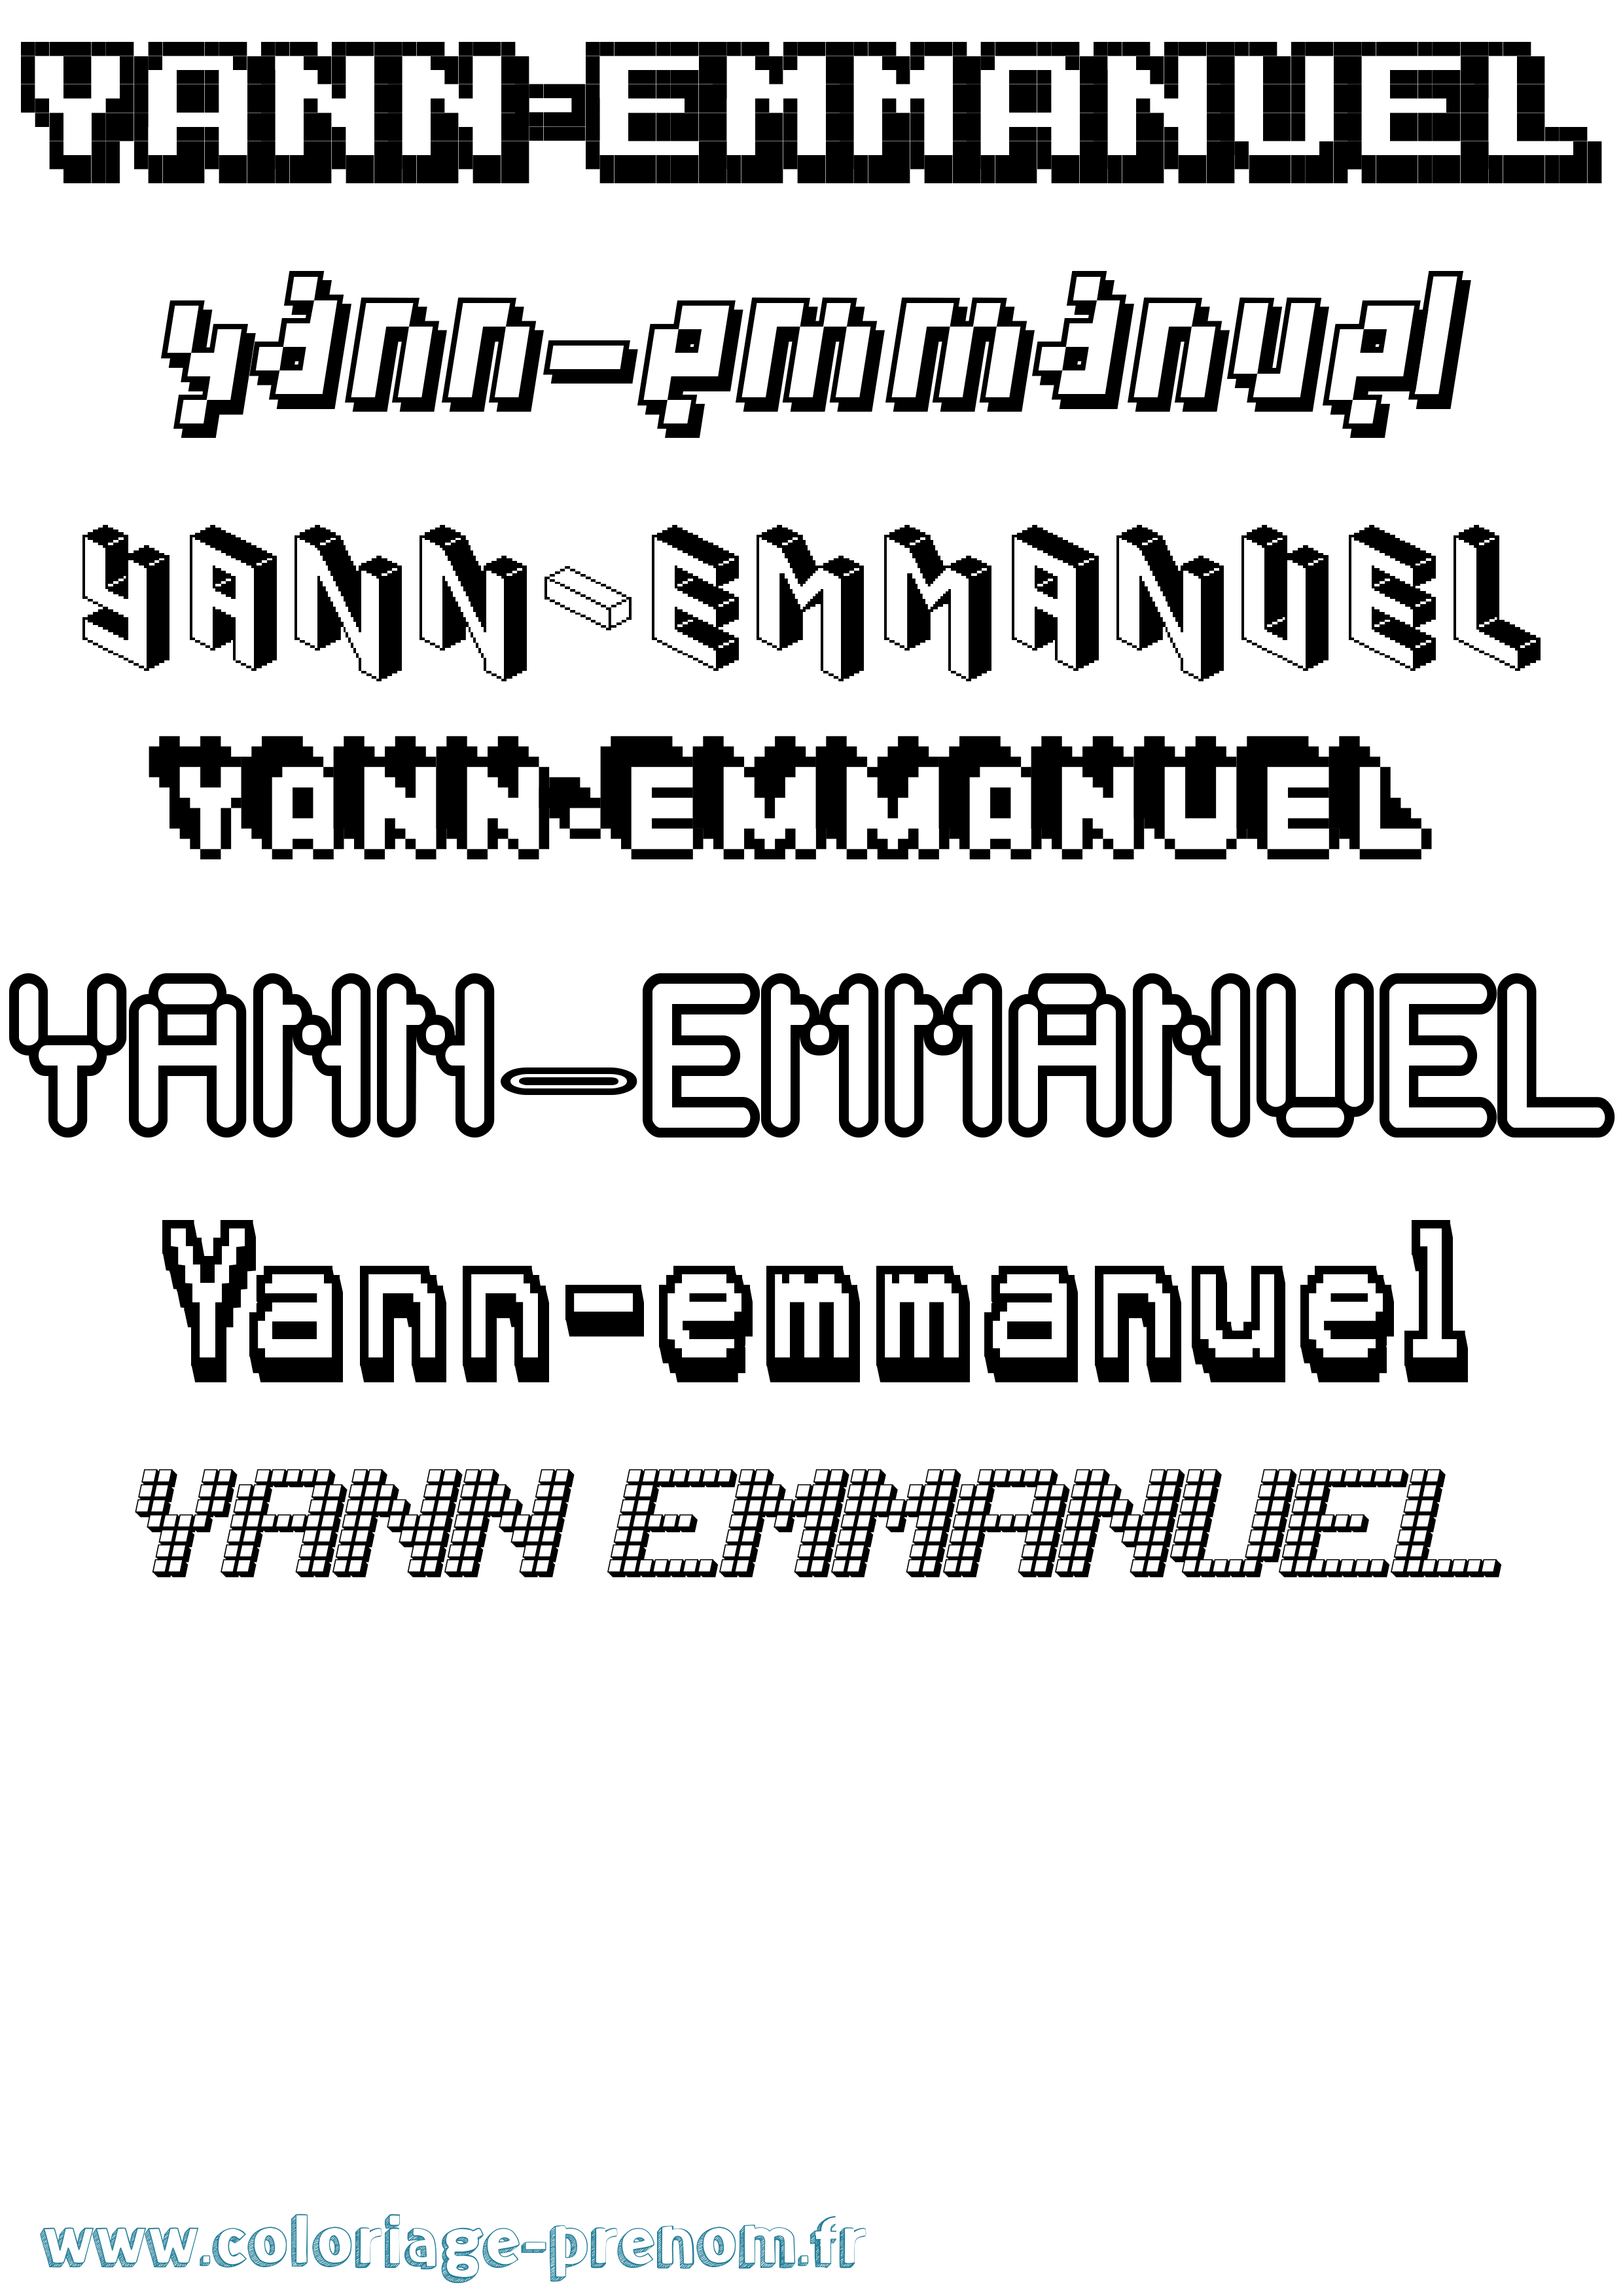 Coloriage prénom Yann-Emmanuel Pixel